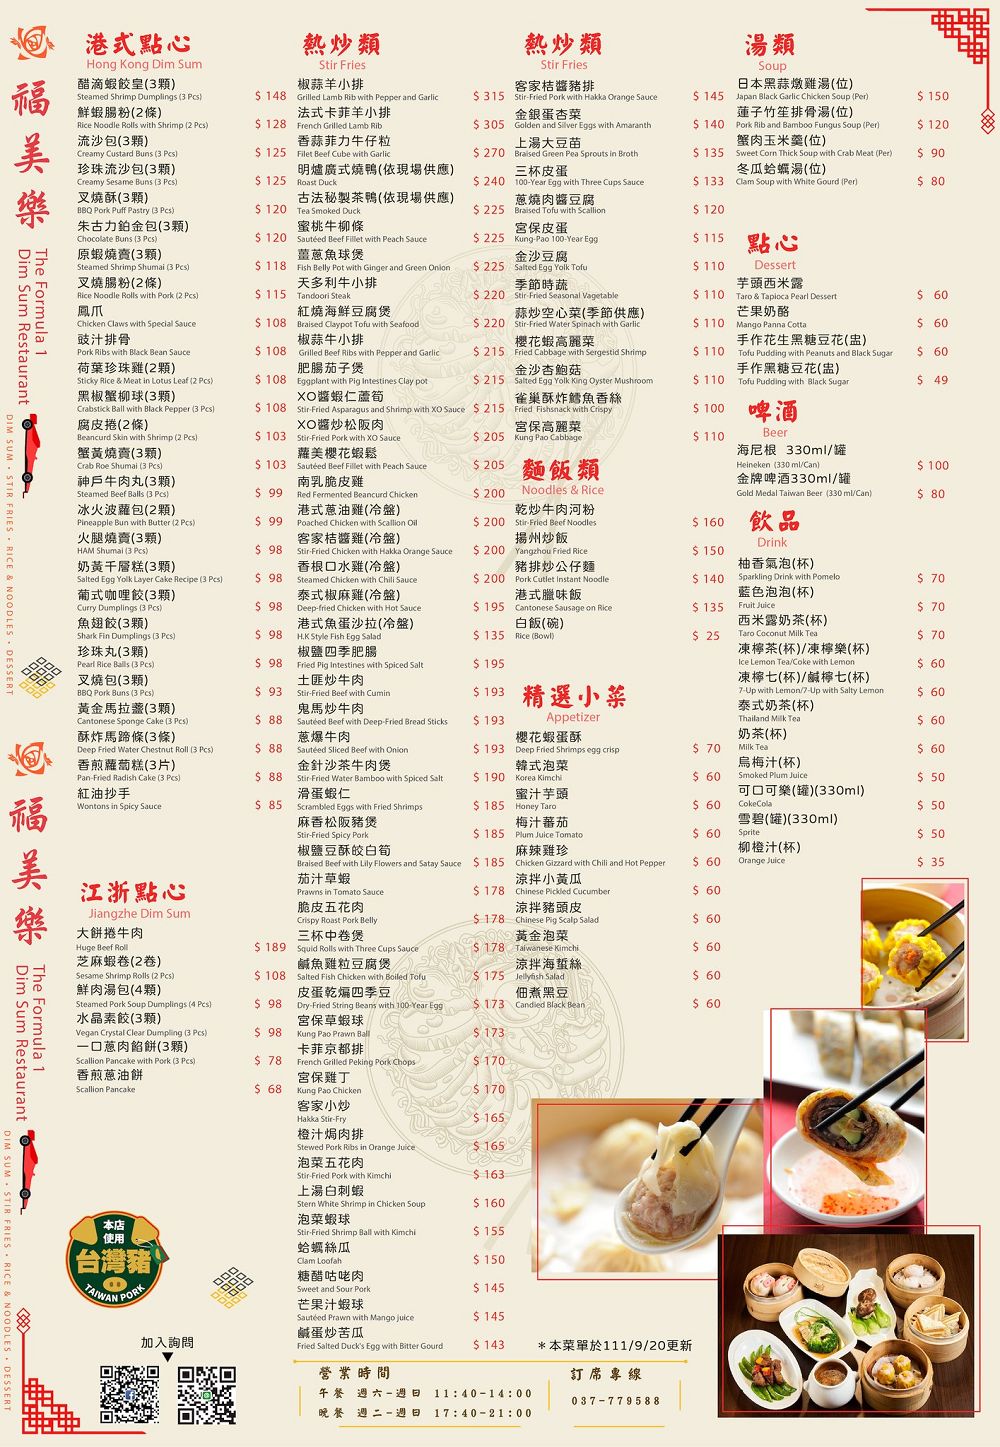 苗栗竹南美食福美樂Formula 1港式茶餐廳F1賽車送餐菜單